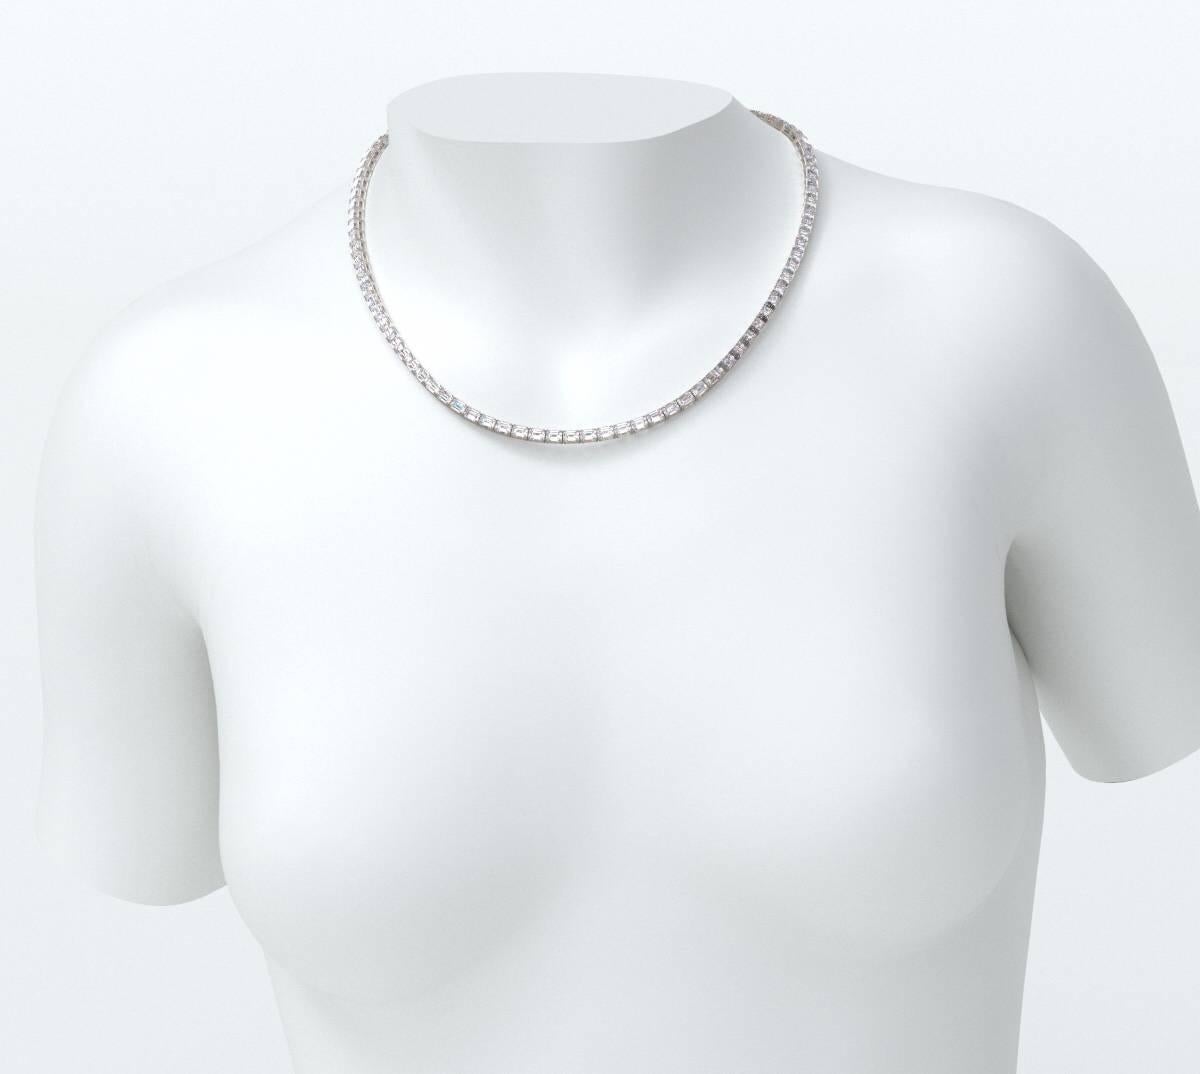 Emilio Jewelry Gia Certified 30.00 Carat Emerald Cut Diamond Necklace For Sale 3